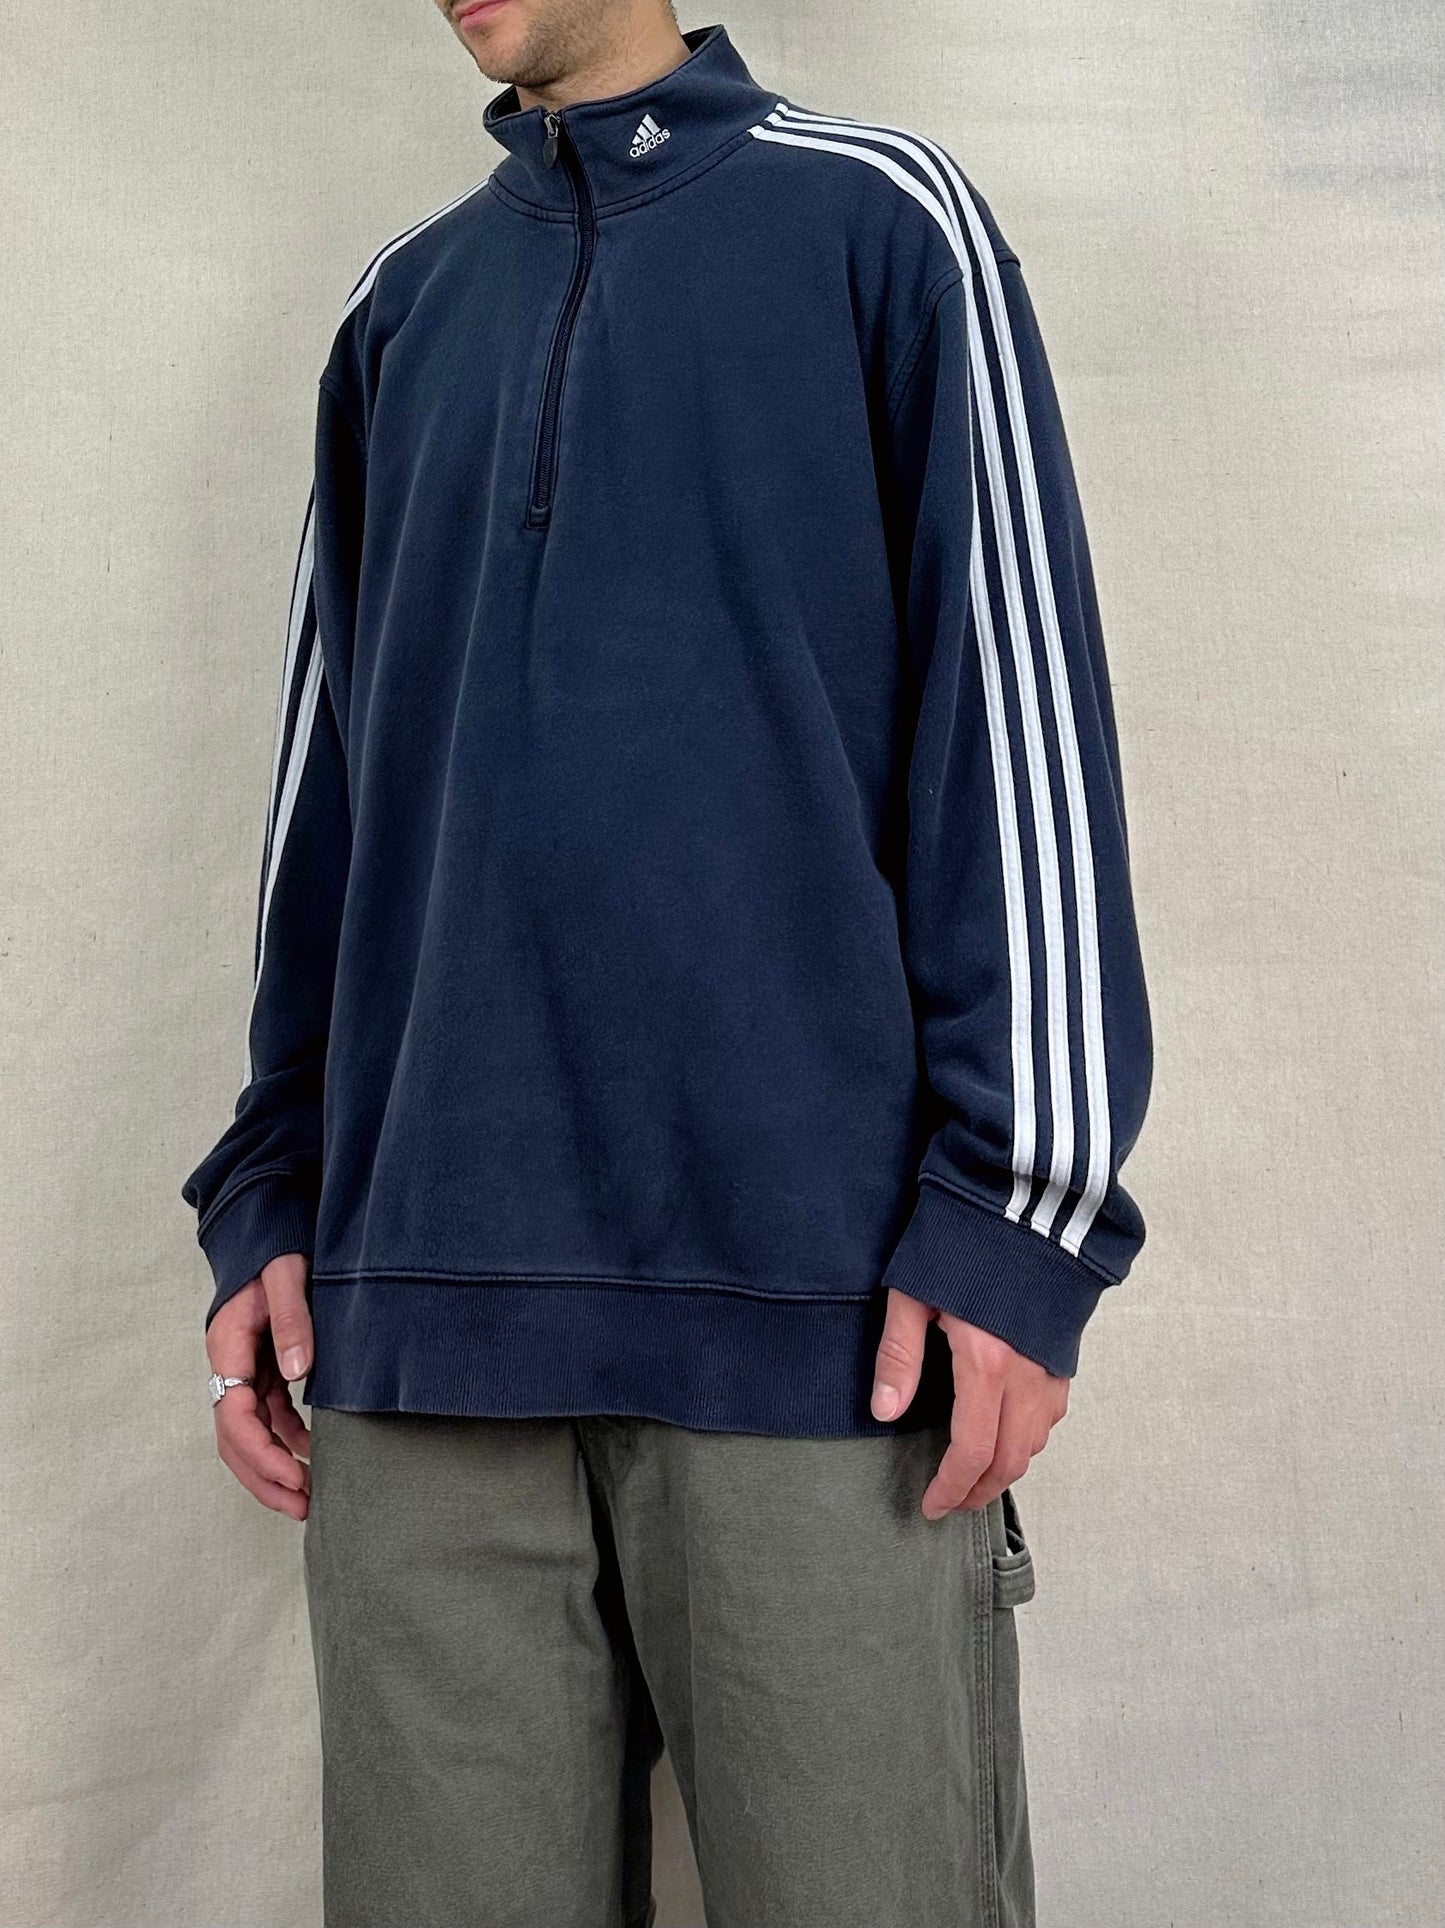 90's Adidas Embroidered Vintage Quarterzip Sweatshirt Size 2XL